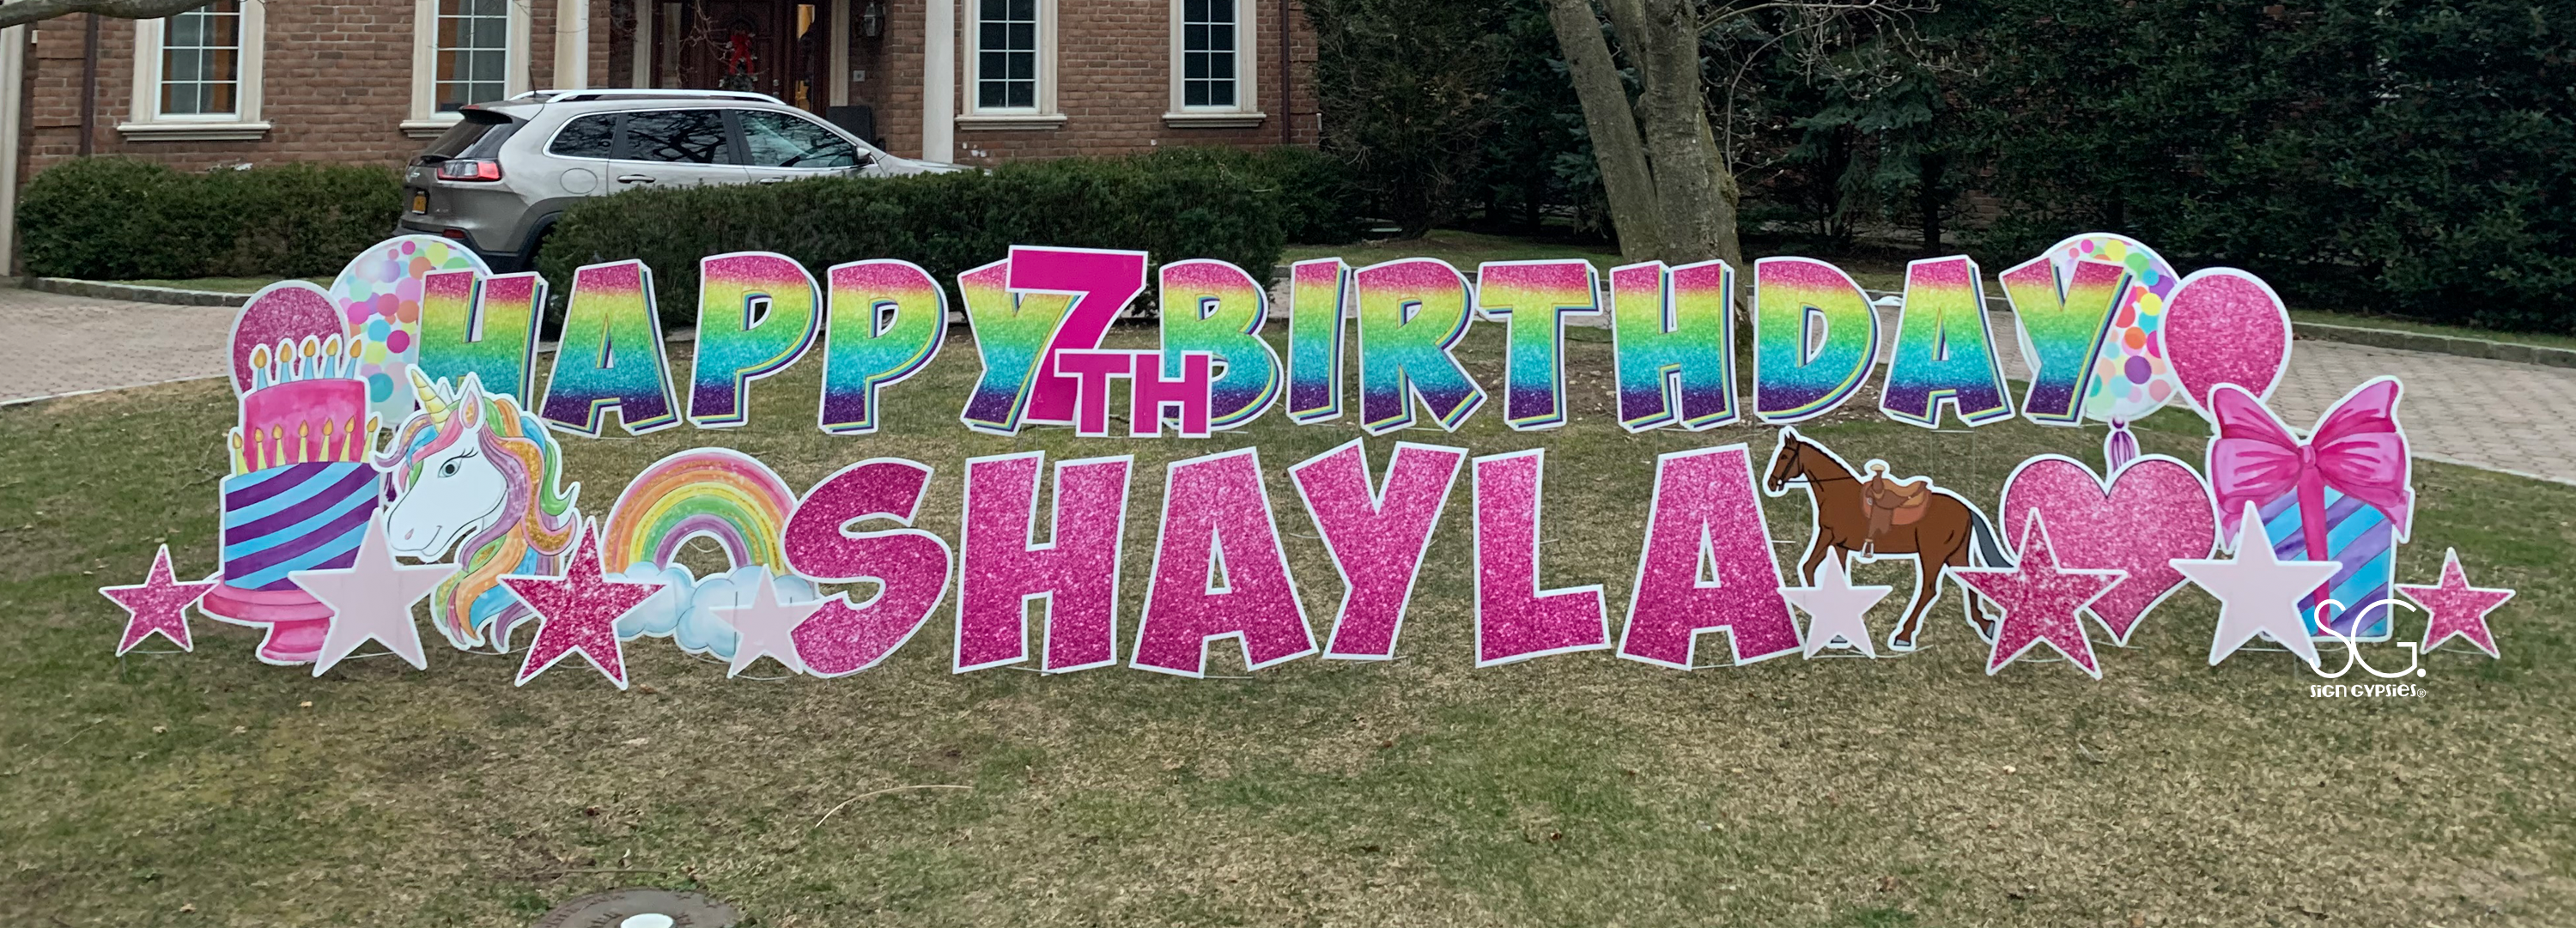 Happy Seventh Birthday Shayla